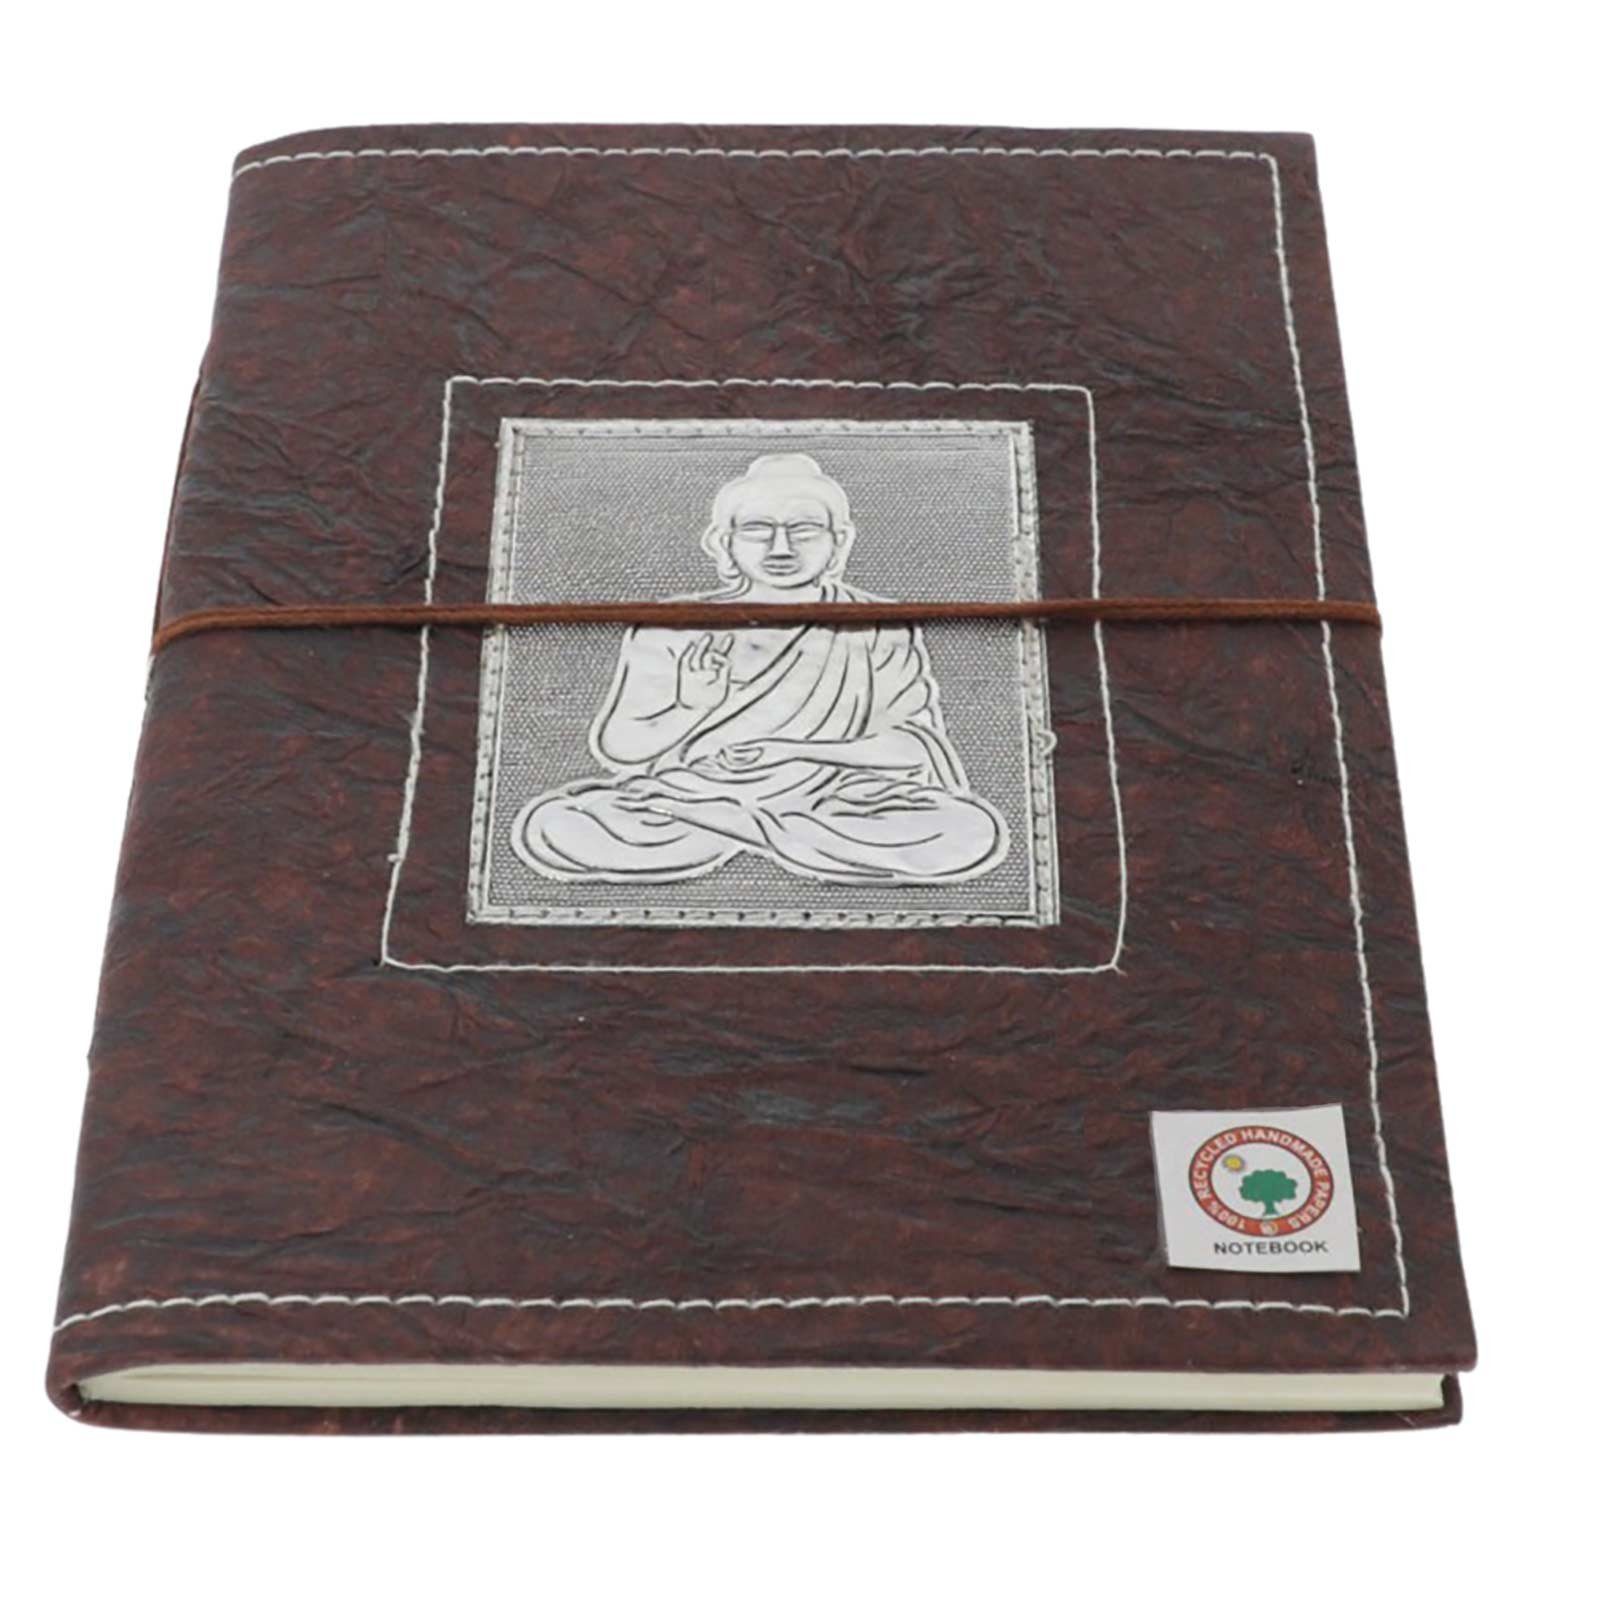 KUNST UND MAGIE Notizbuch Buddha Tagebuch Poesiealbum Notizbuch handgefertigt-Geprägtes 20x15cm